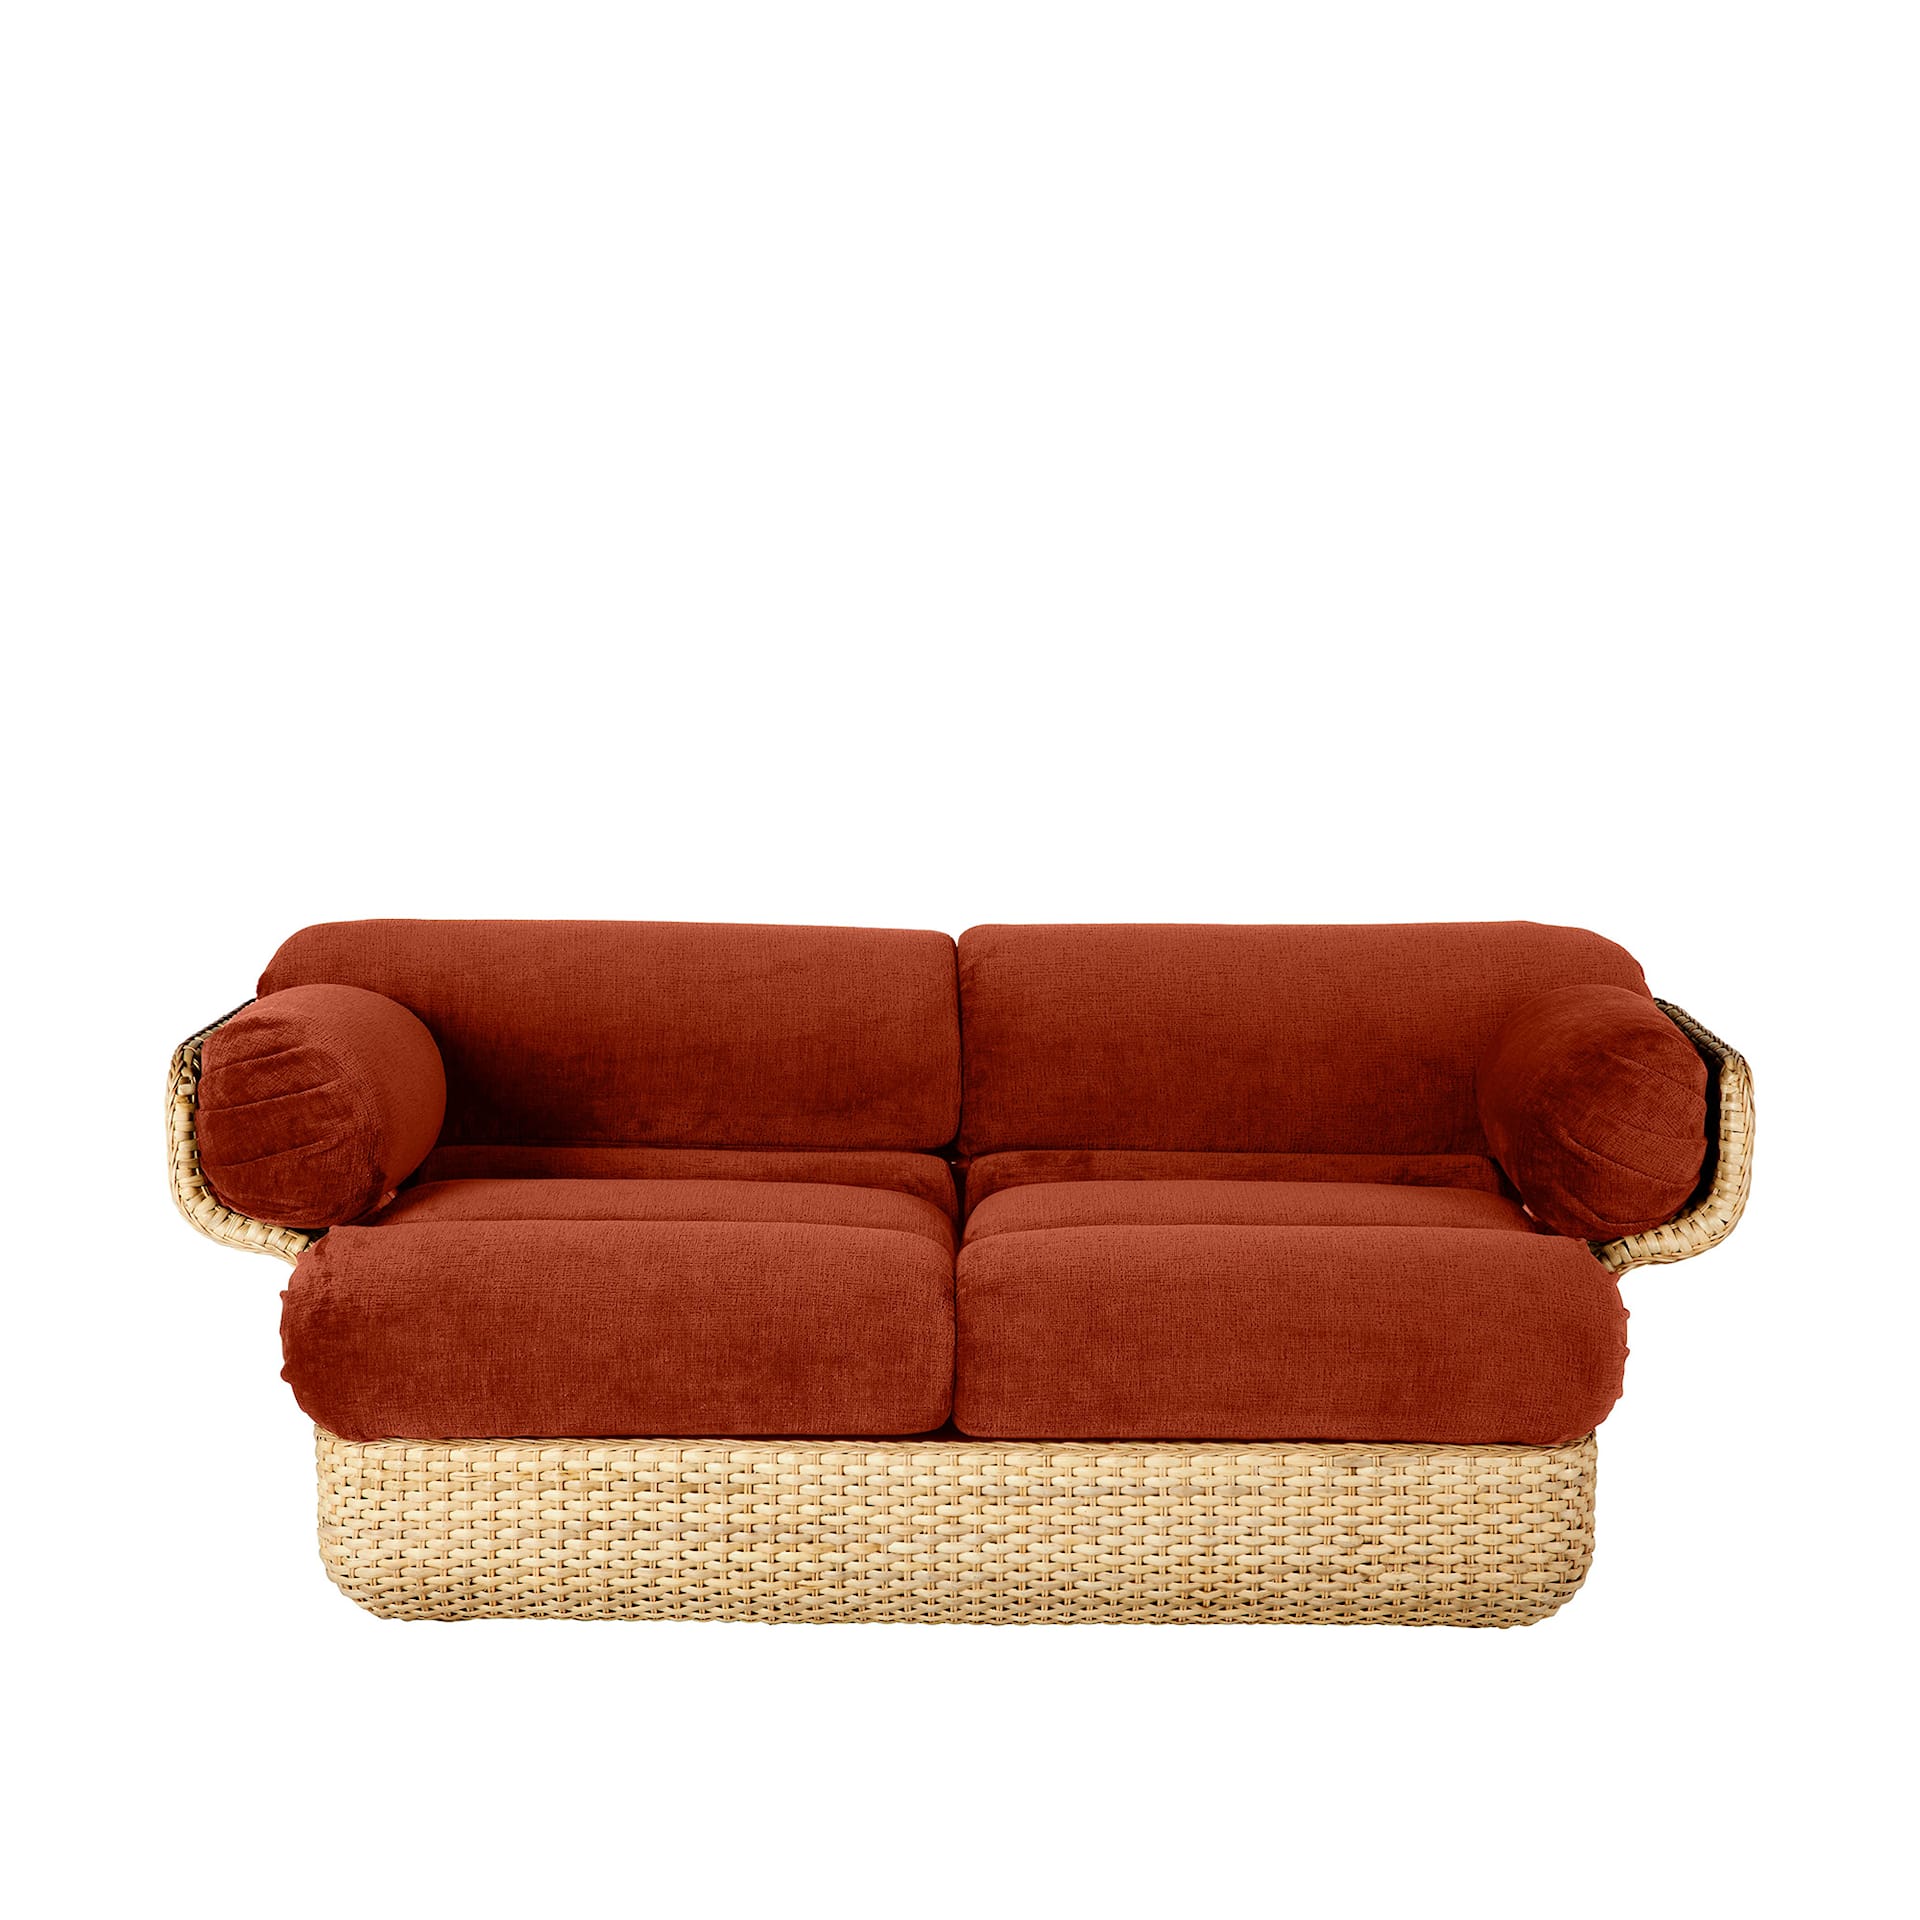 Basket Sofa - Fully Upholstered, 2-seater Rattan Belsuede Special FR 133, Dedar - Gubi - Joe Colombo - NO GA